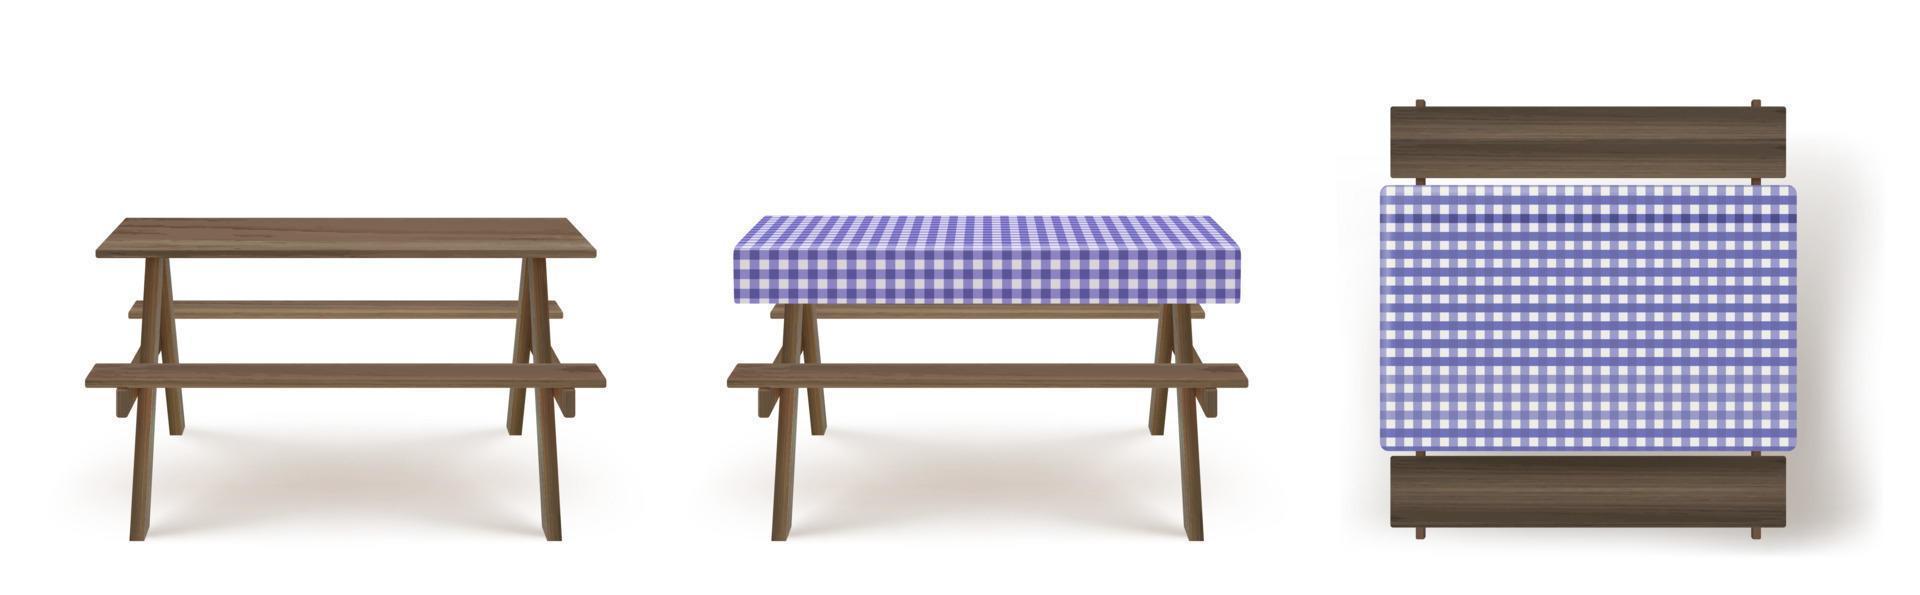 mesa de picnic de madera con bancos mantel vector